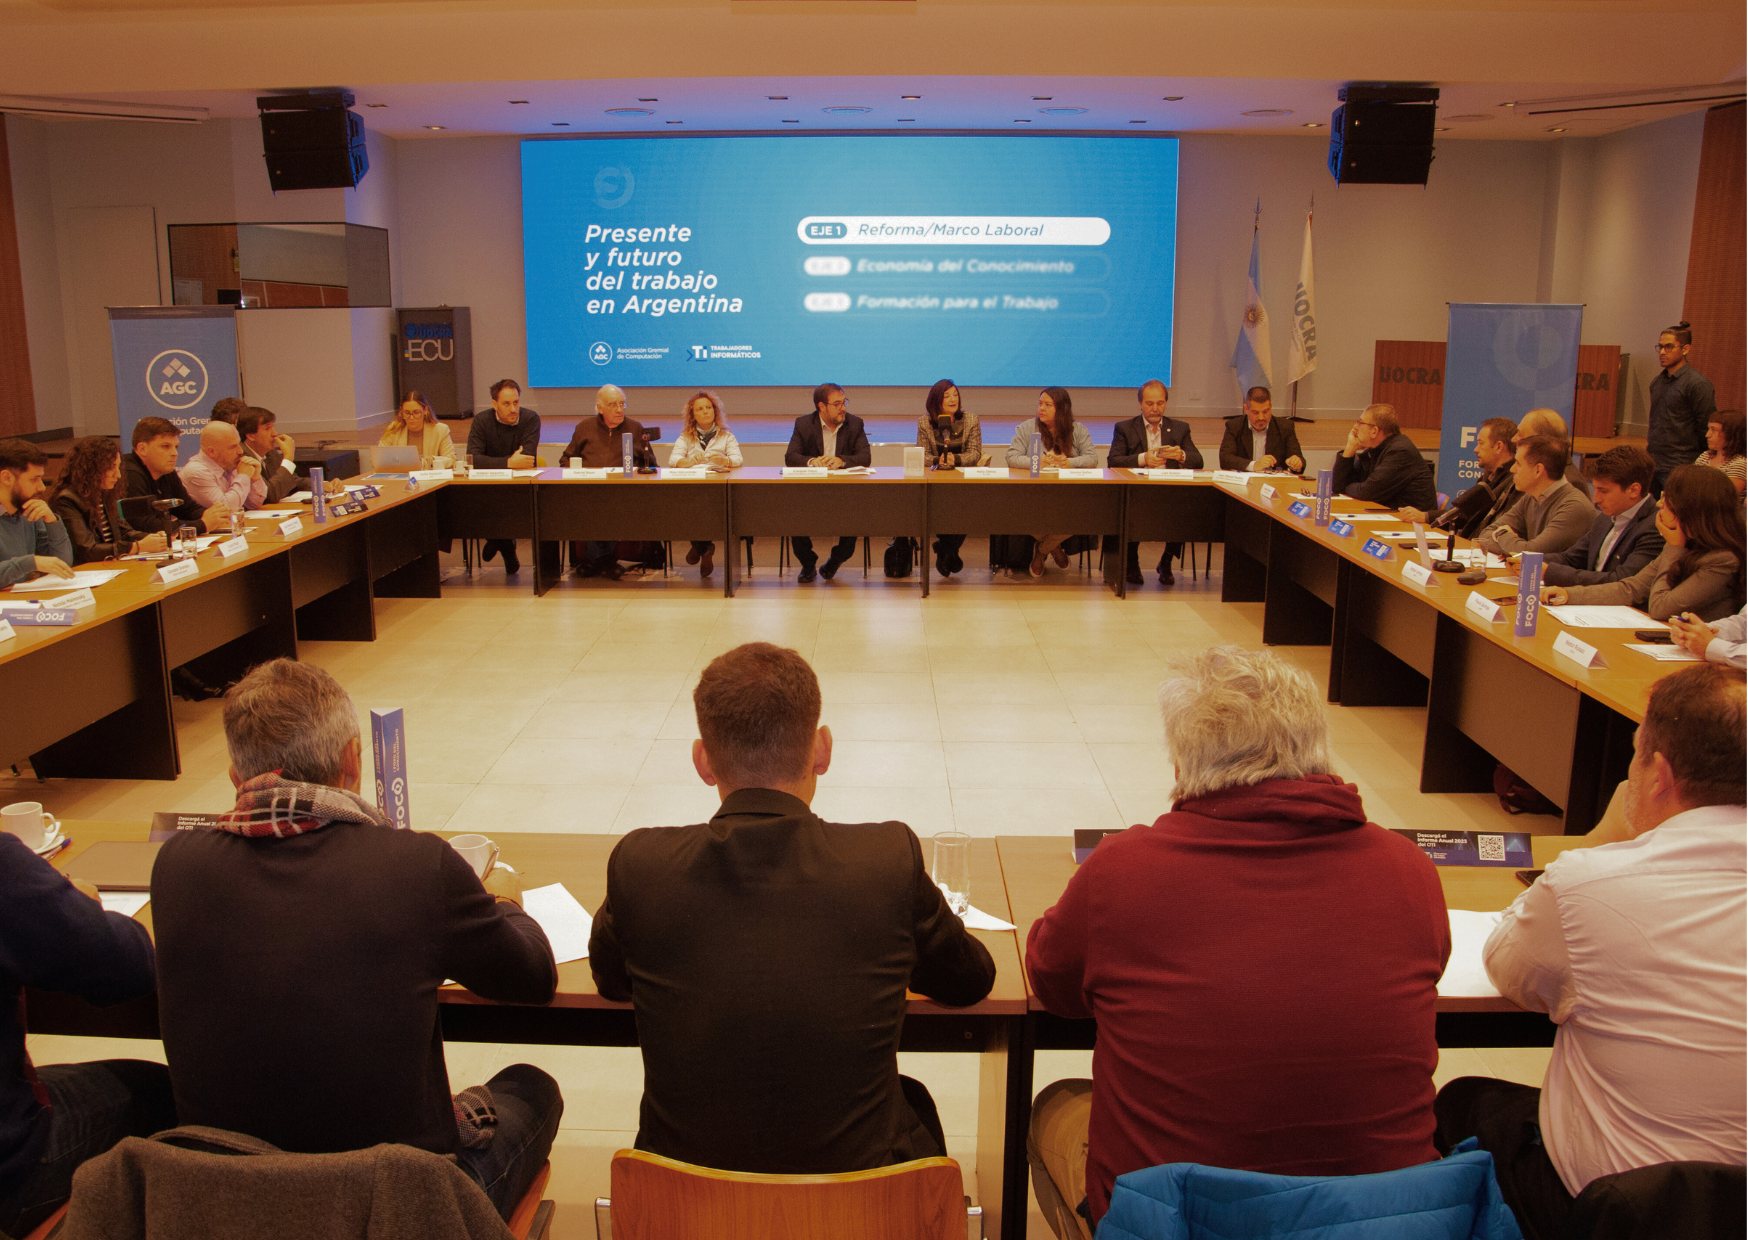 Lanzamos FoCo - Foro del Conocimiento: “Presente y futuro del trabajo en Argentina”